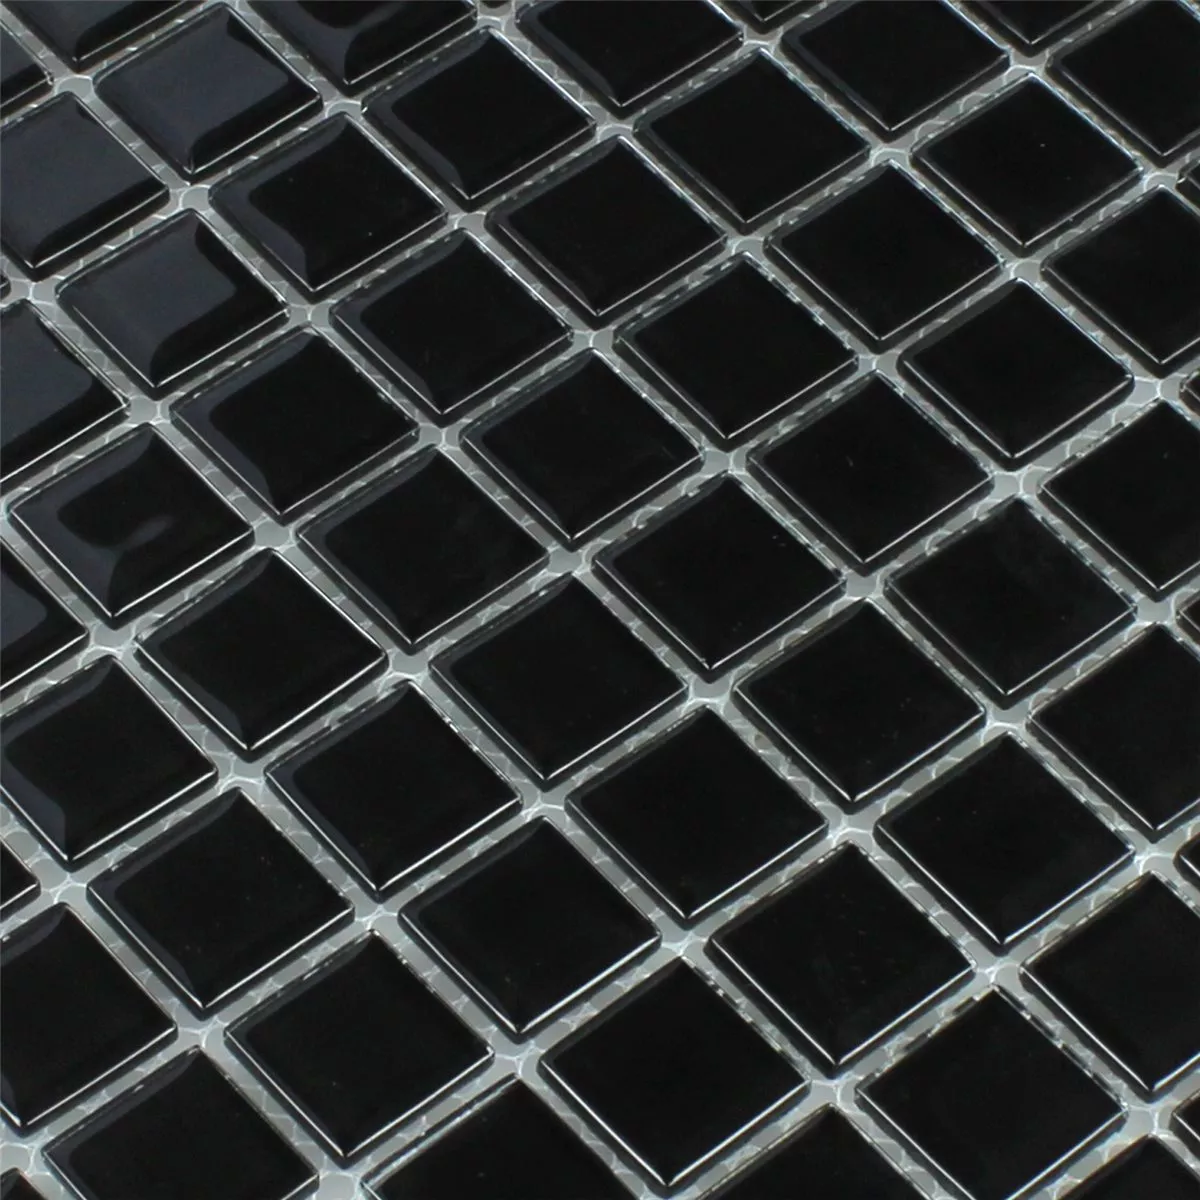 Muster von Glasmosaik Fliesen Schwarz 